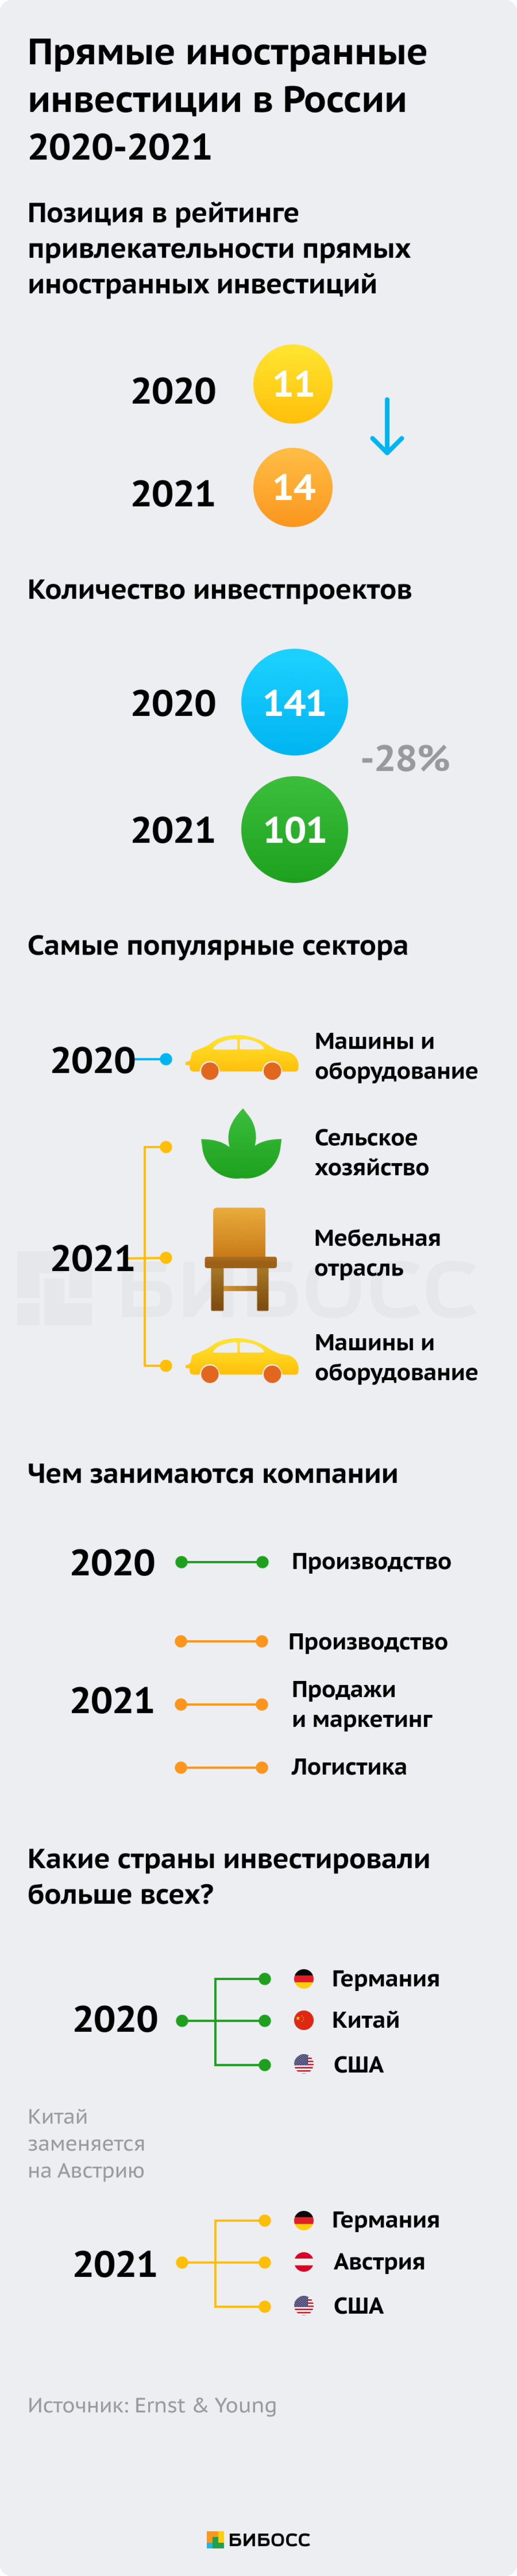 Прямые иностранные инвестиции в России 2020-2021